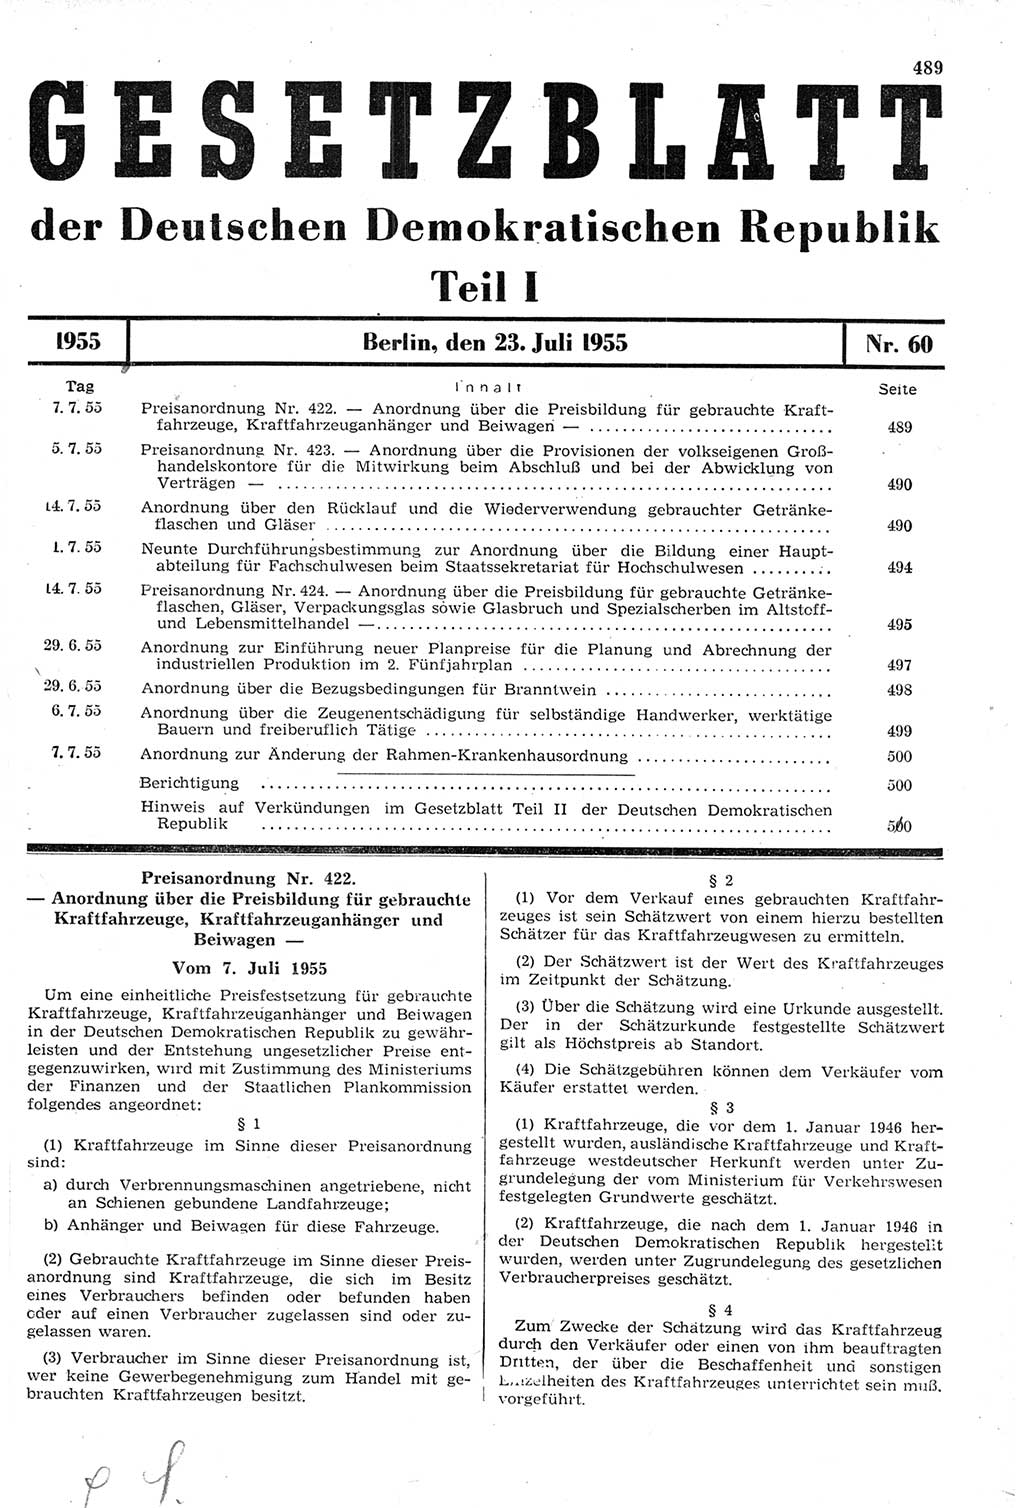 Gesetzblatt (GBl.) der Deutschen Demokratischen Republik (DDR) Teil Ⅰ 1955, Seite 489 (GBl. DDR Ⅰ 1955, S. 489)